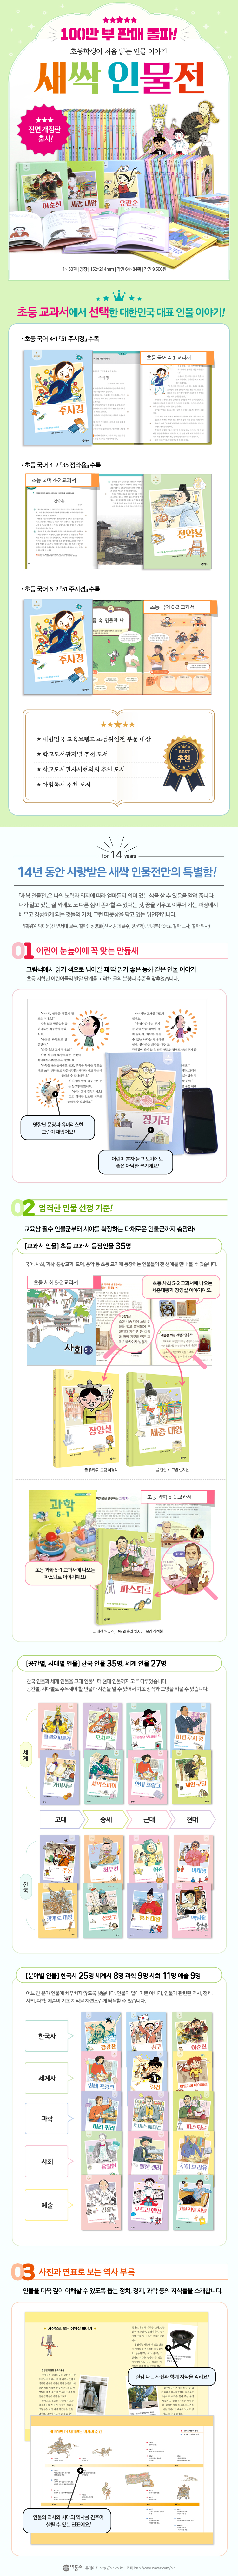 새싹인물전개정판_62권 웹페이지_final